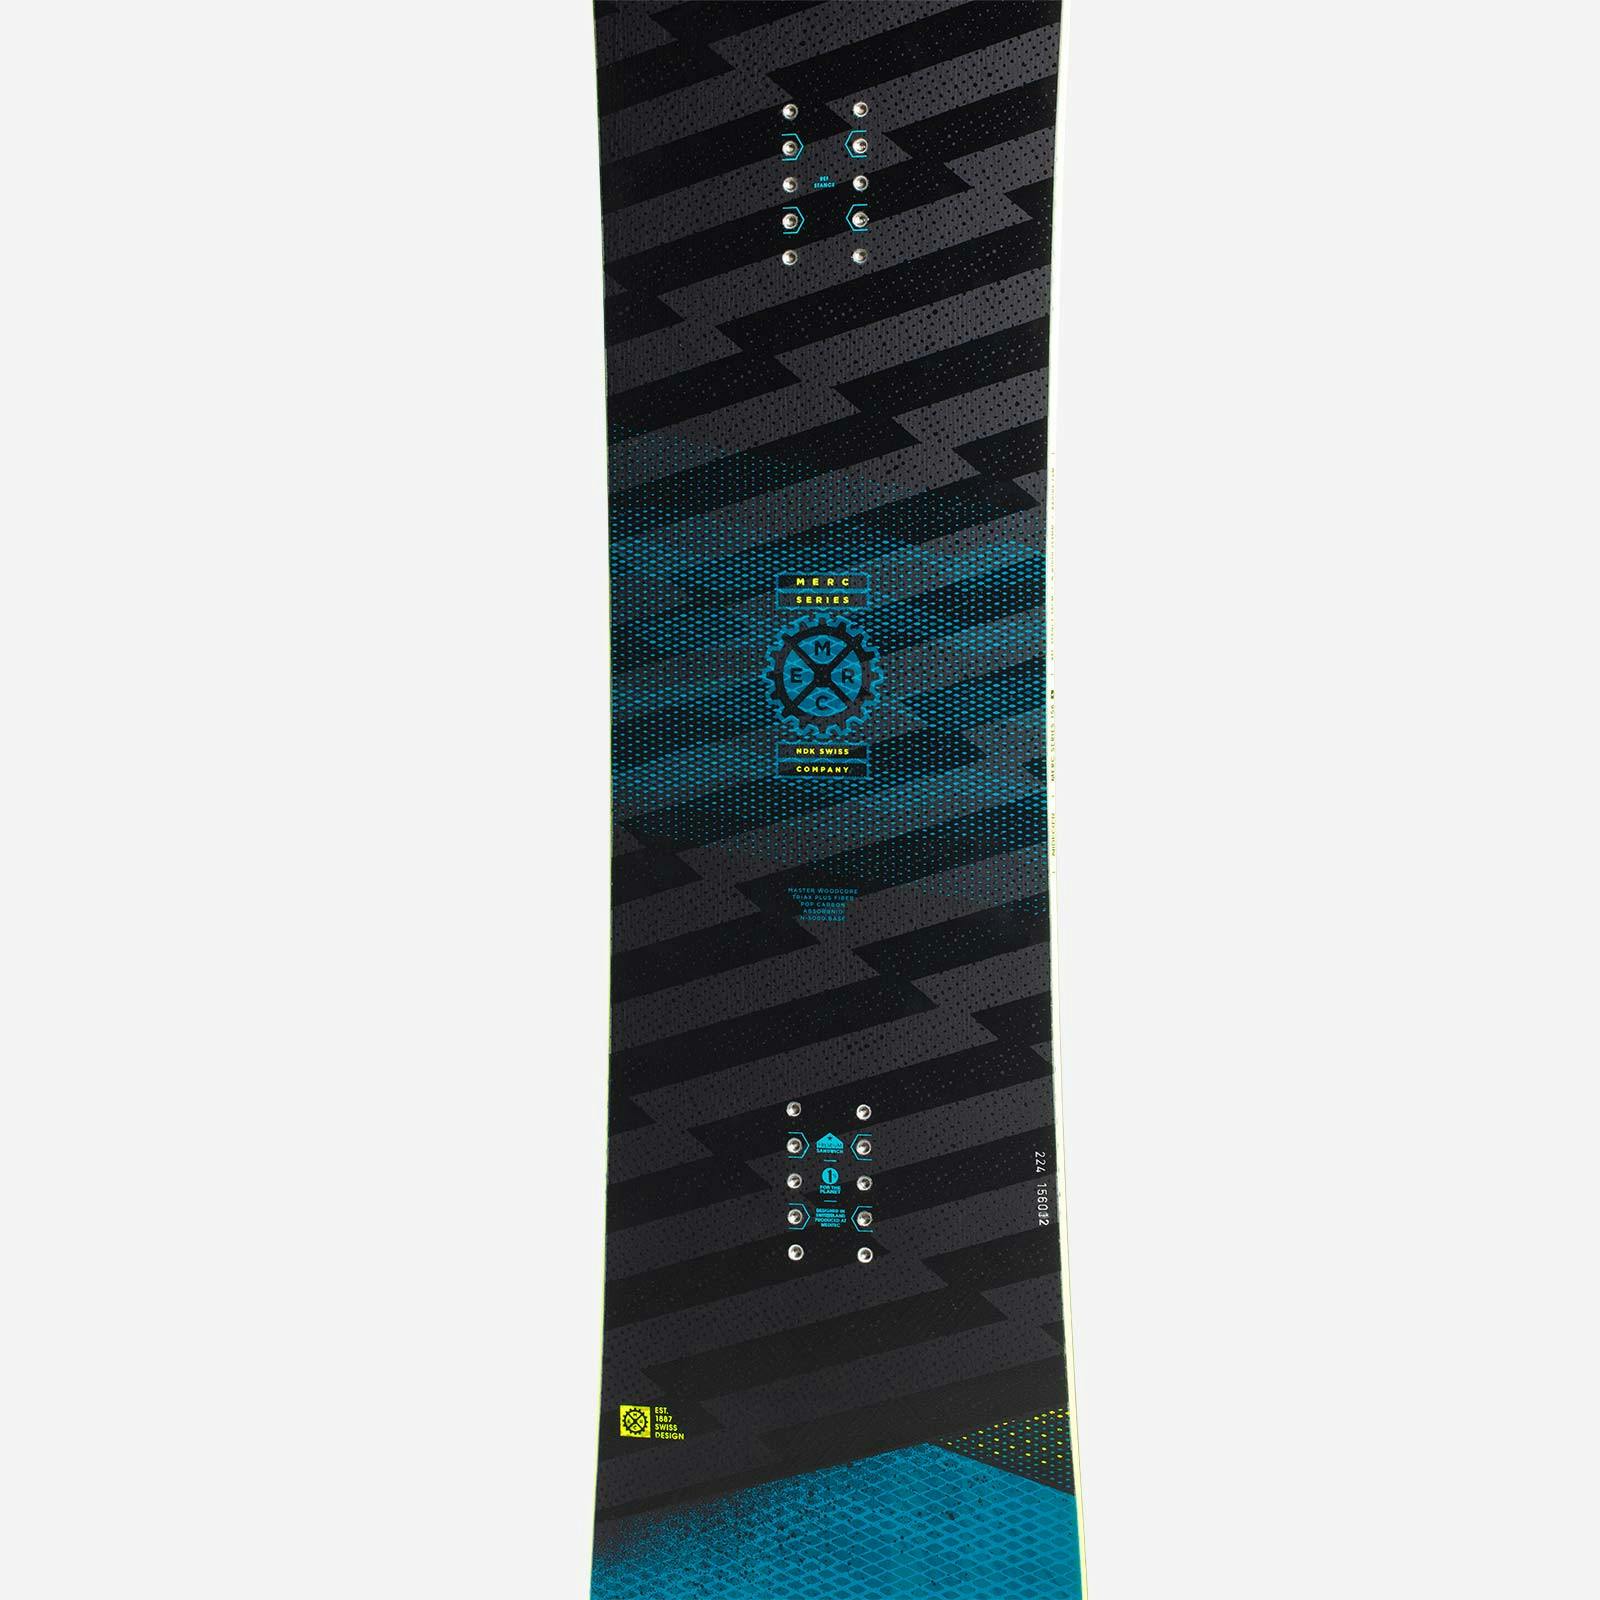 Nidecker Merc Snowboard · 2022